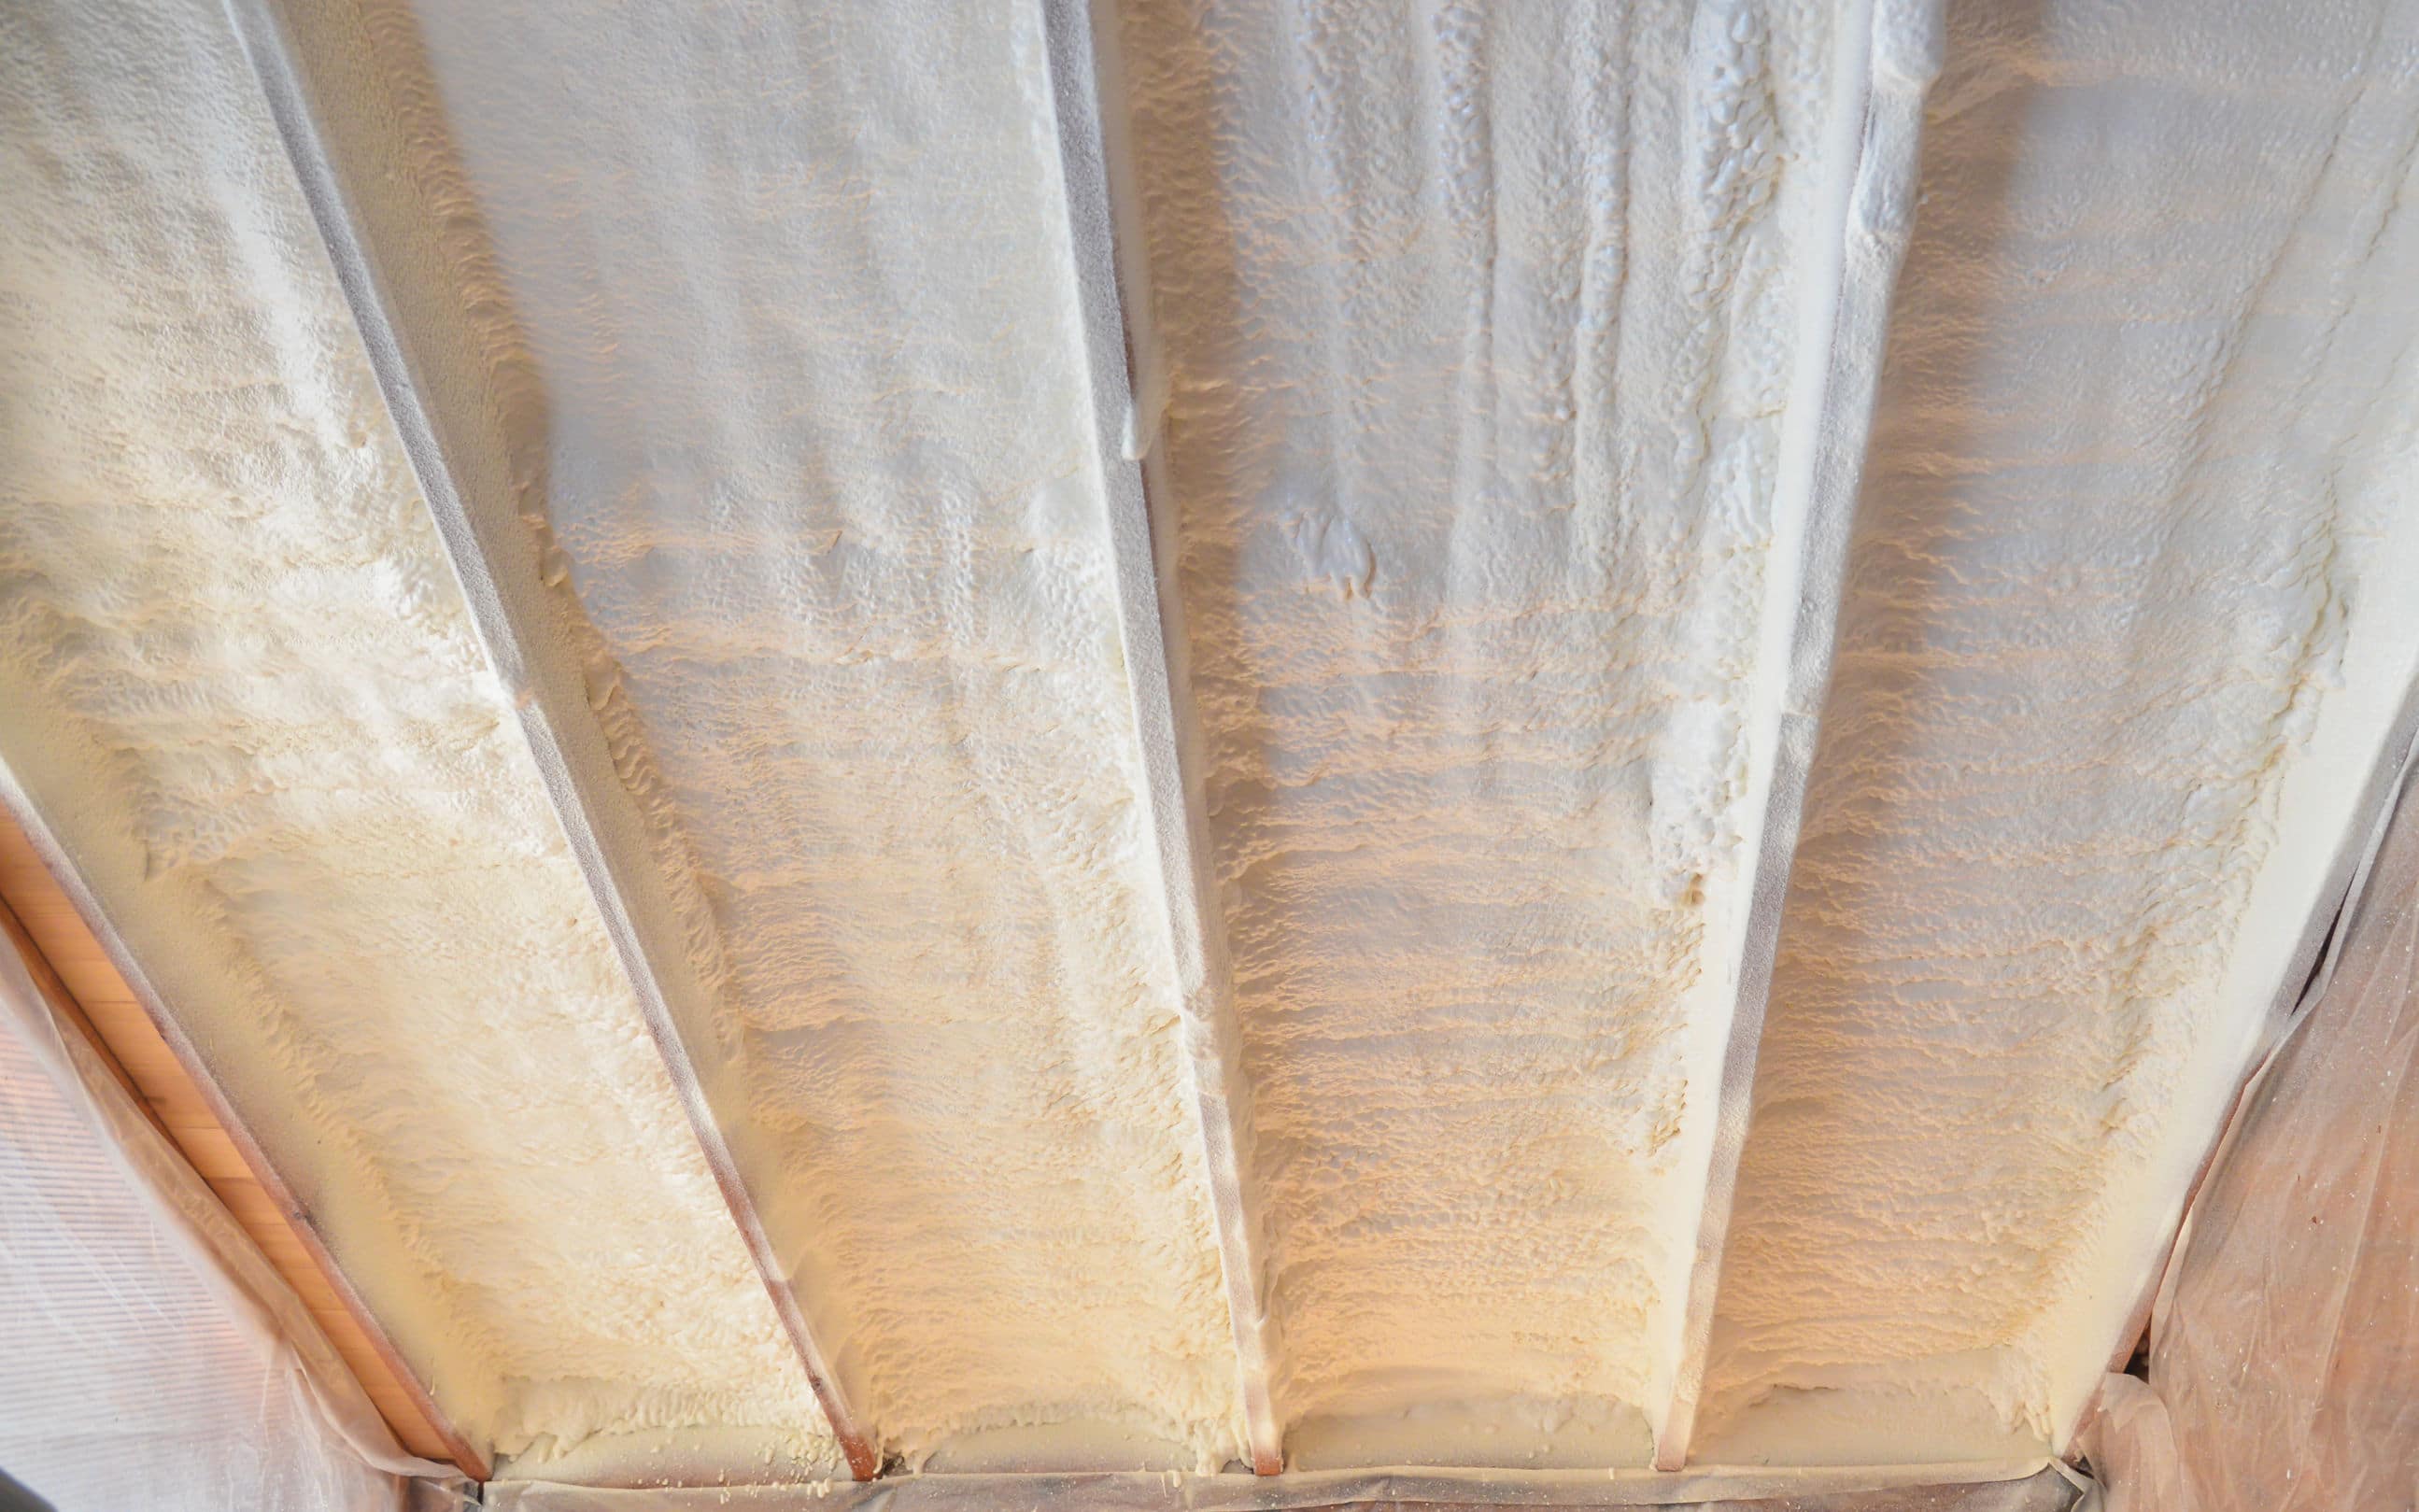 Rêvetement d'une sous toiture par un isolant phonique en mousse polyuréthane par pulvérisation pour l’isolation phonique de maison, isolation rampants